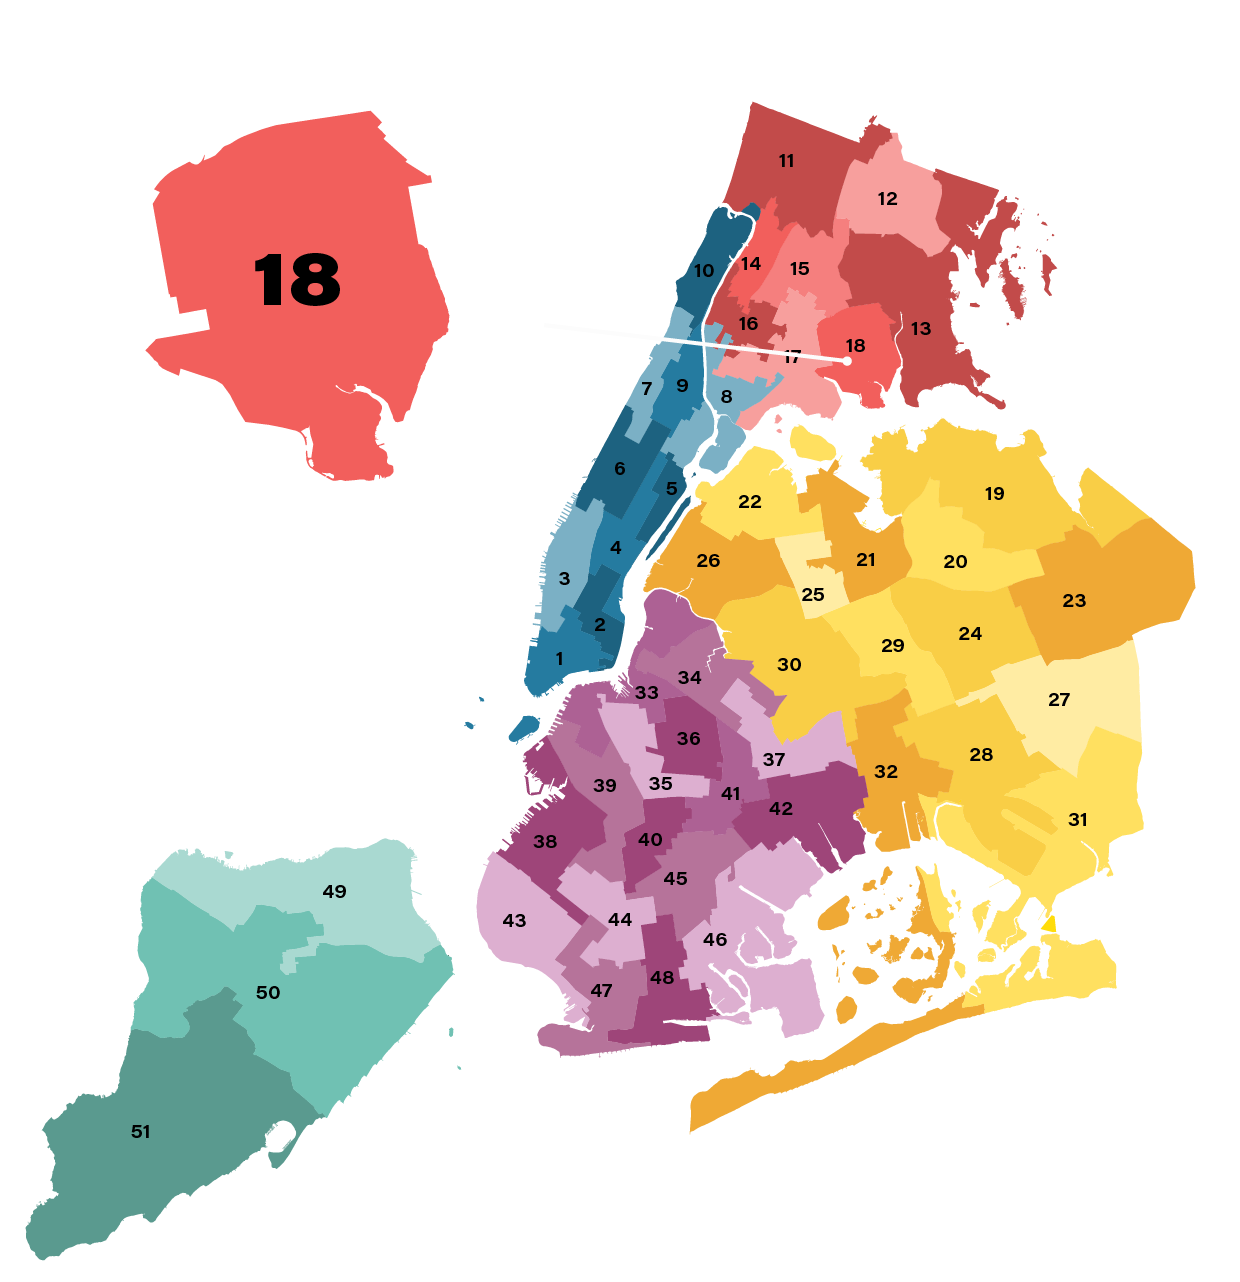 City council district 18